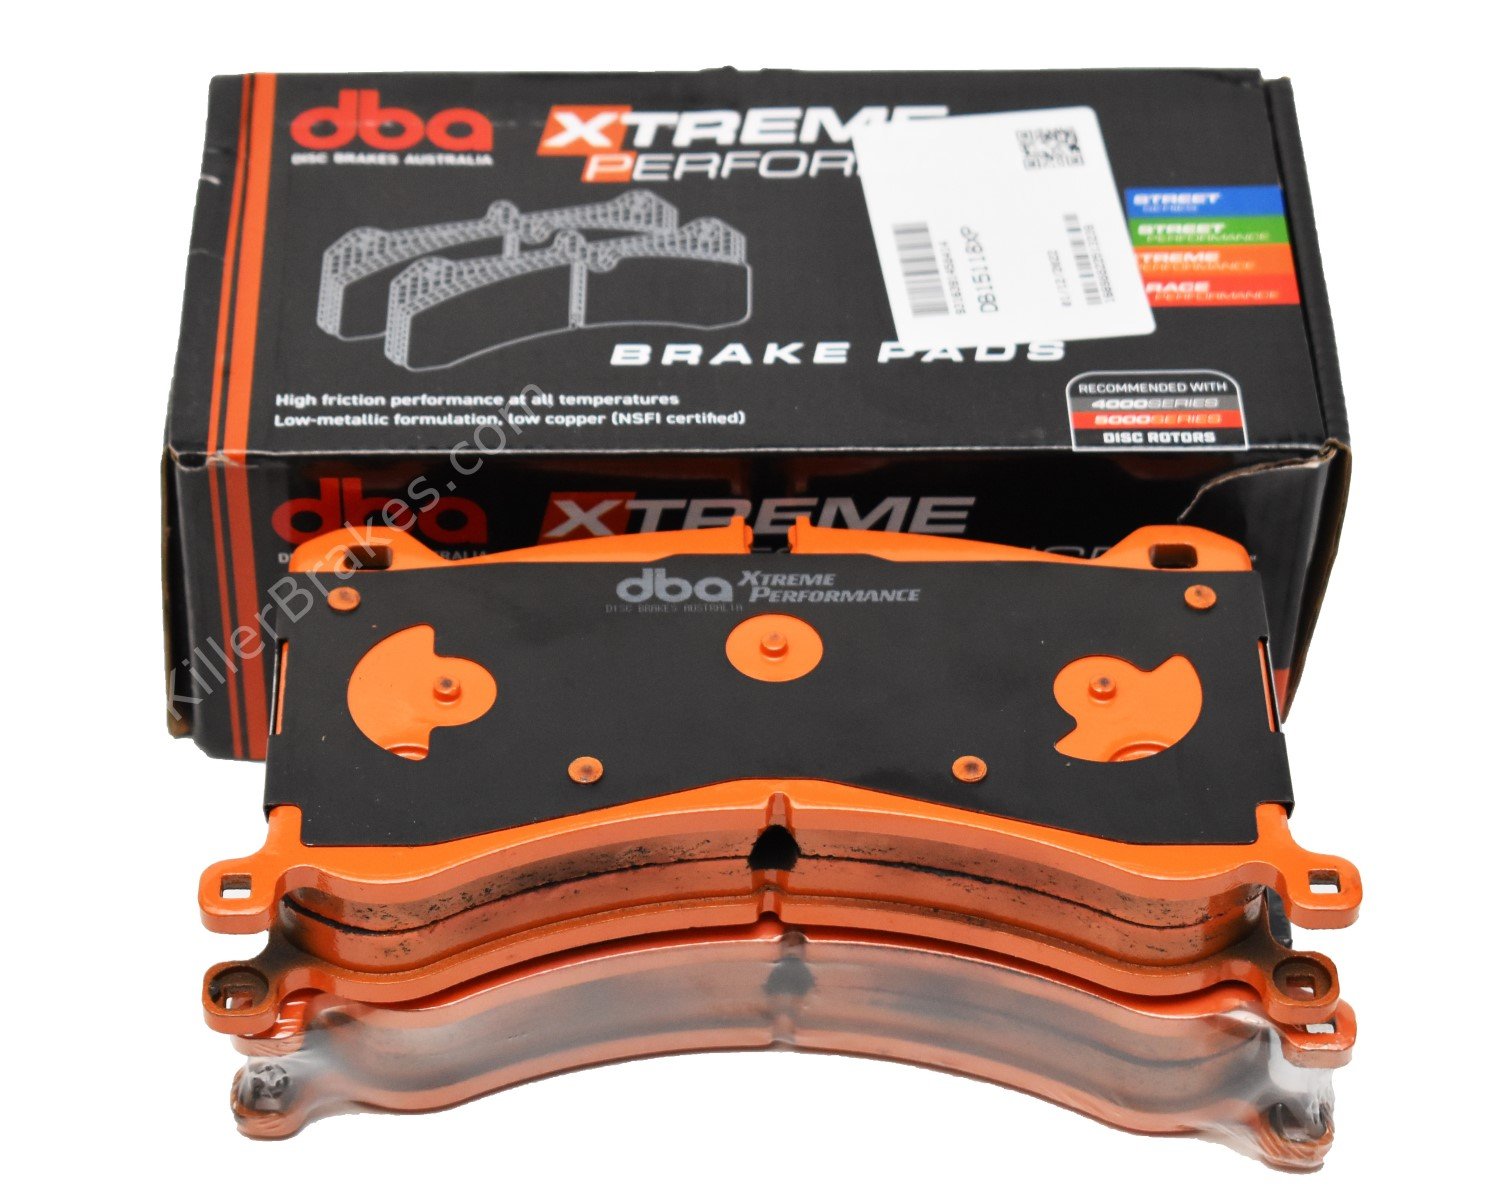 Front E-tron DBA Brake Pads DB15118XP Xtreme Performance Brembo 6pot 400x38mm 4KE698151E New